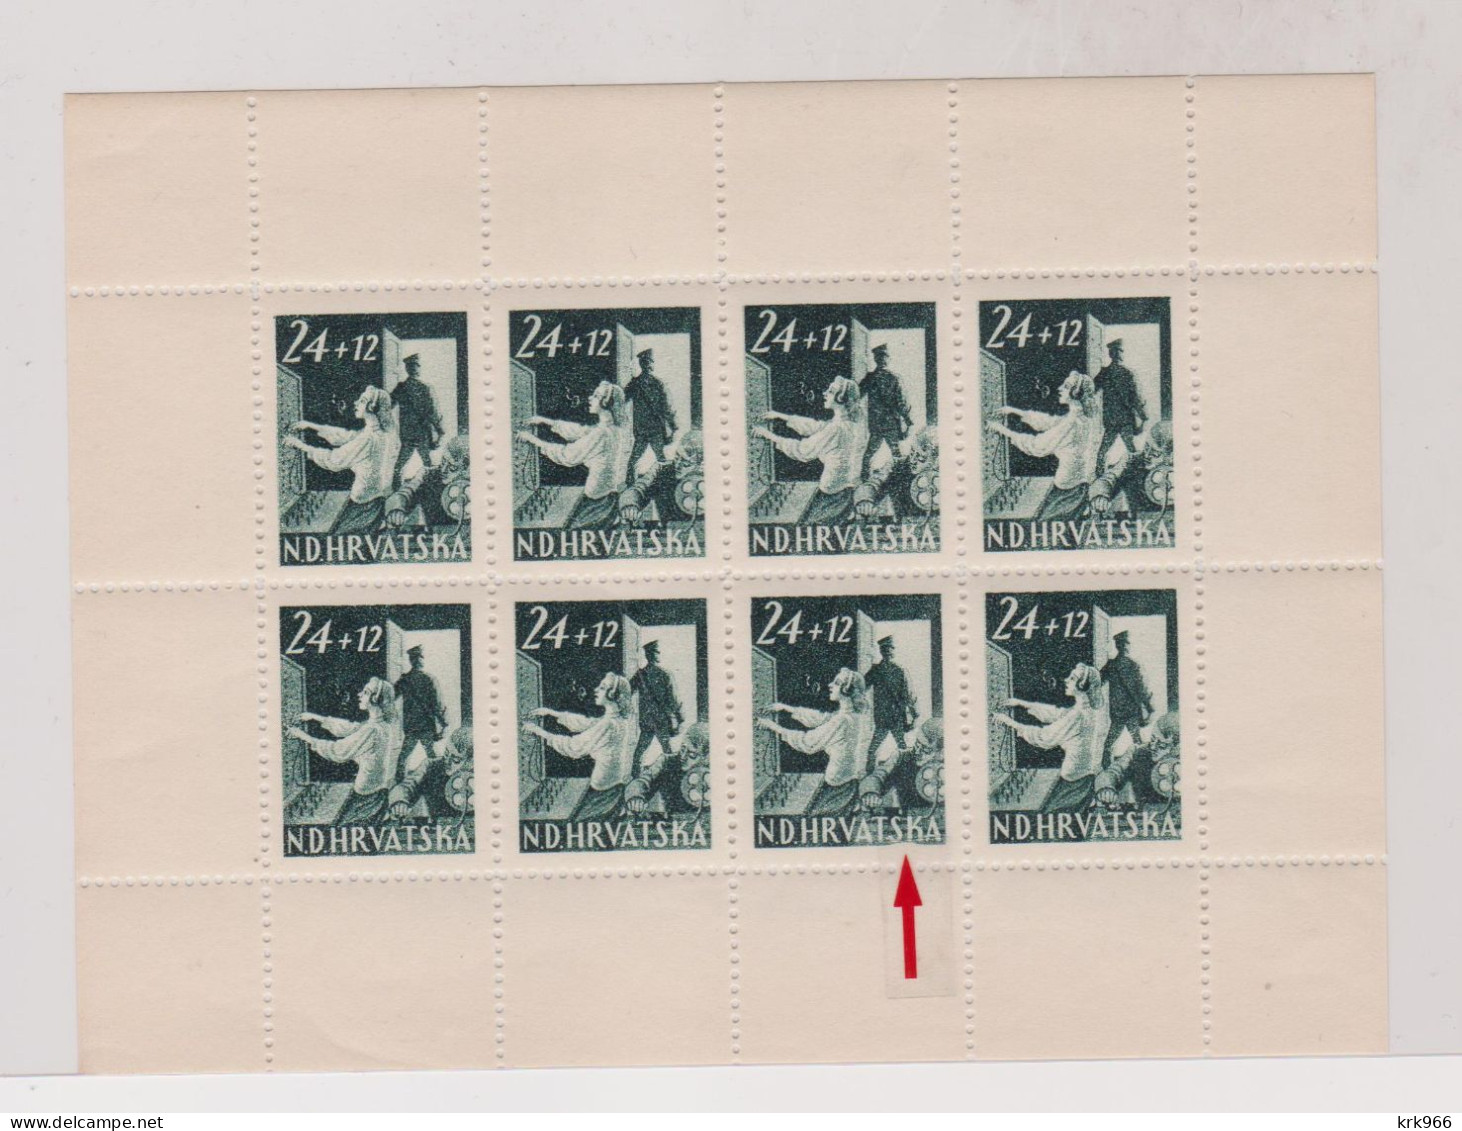 CROATIA, WW II  1945 Postman  Sheet Plate Error  ,MNH - Croatie